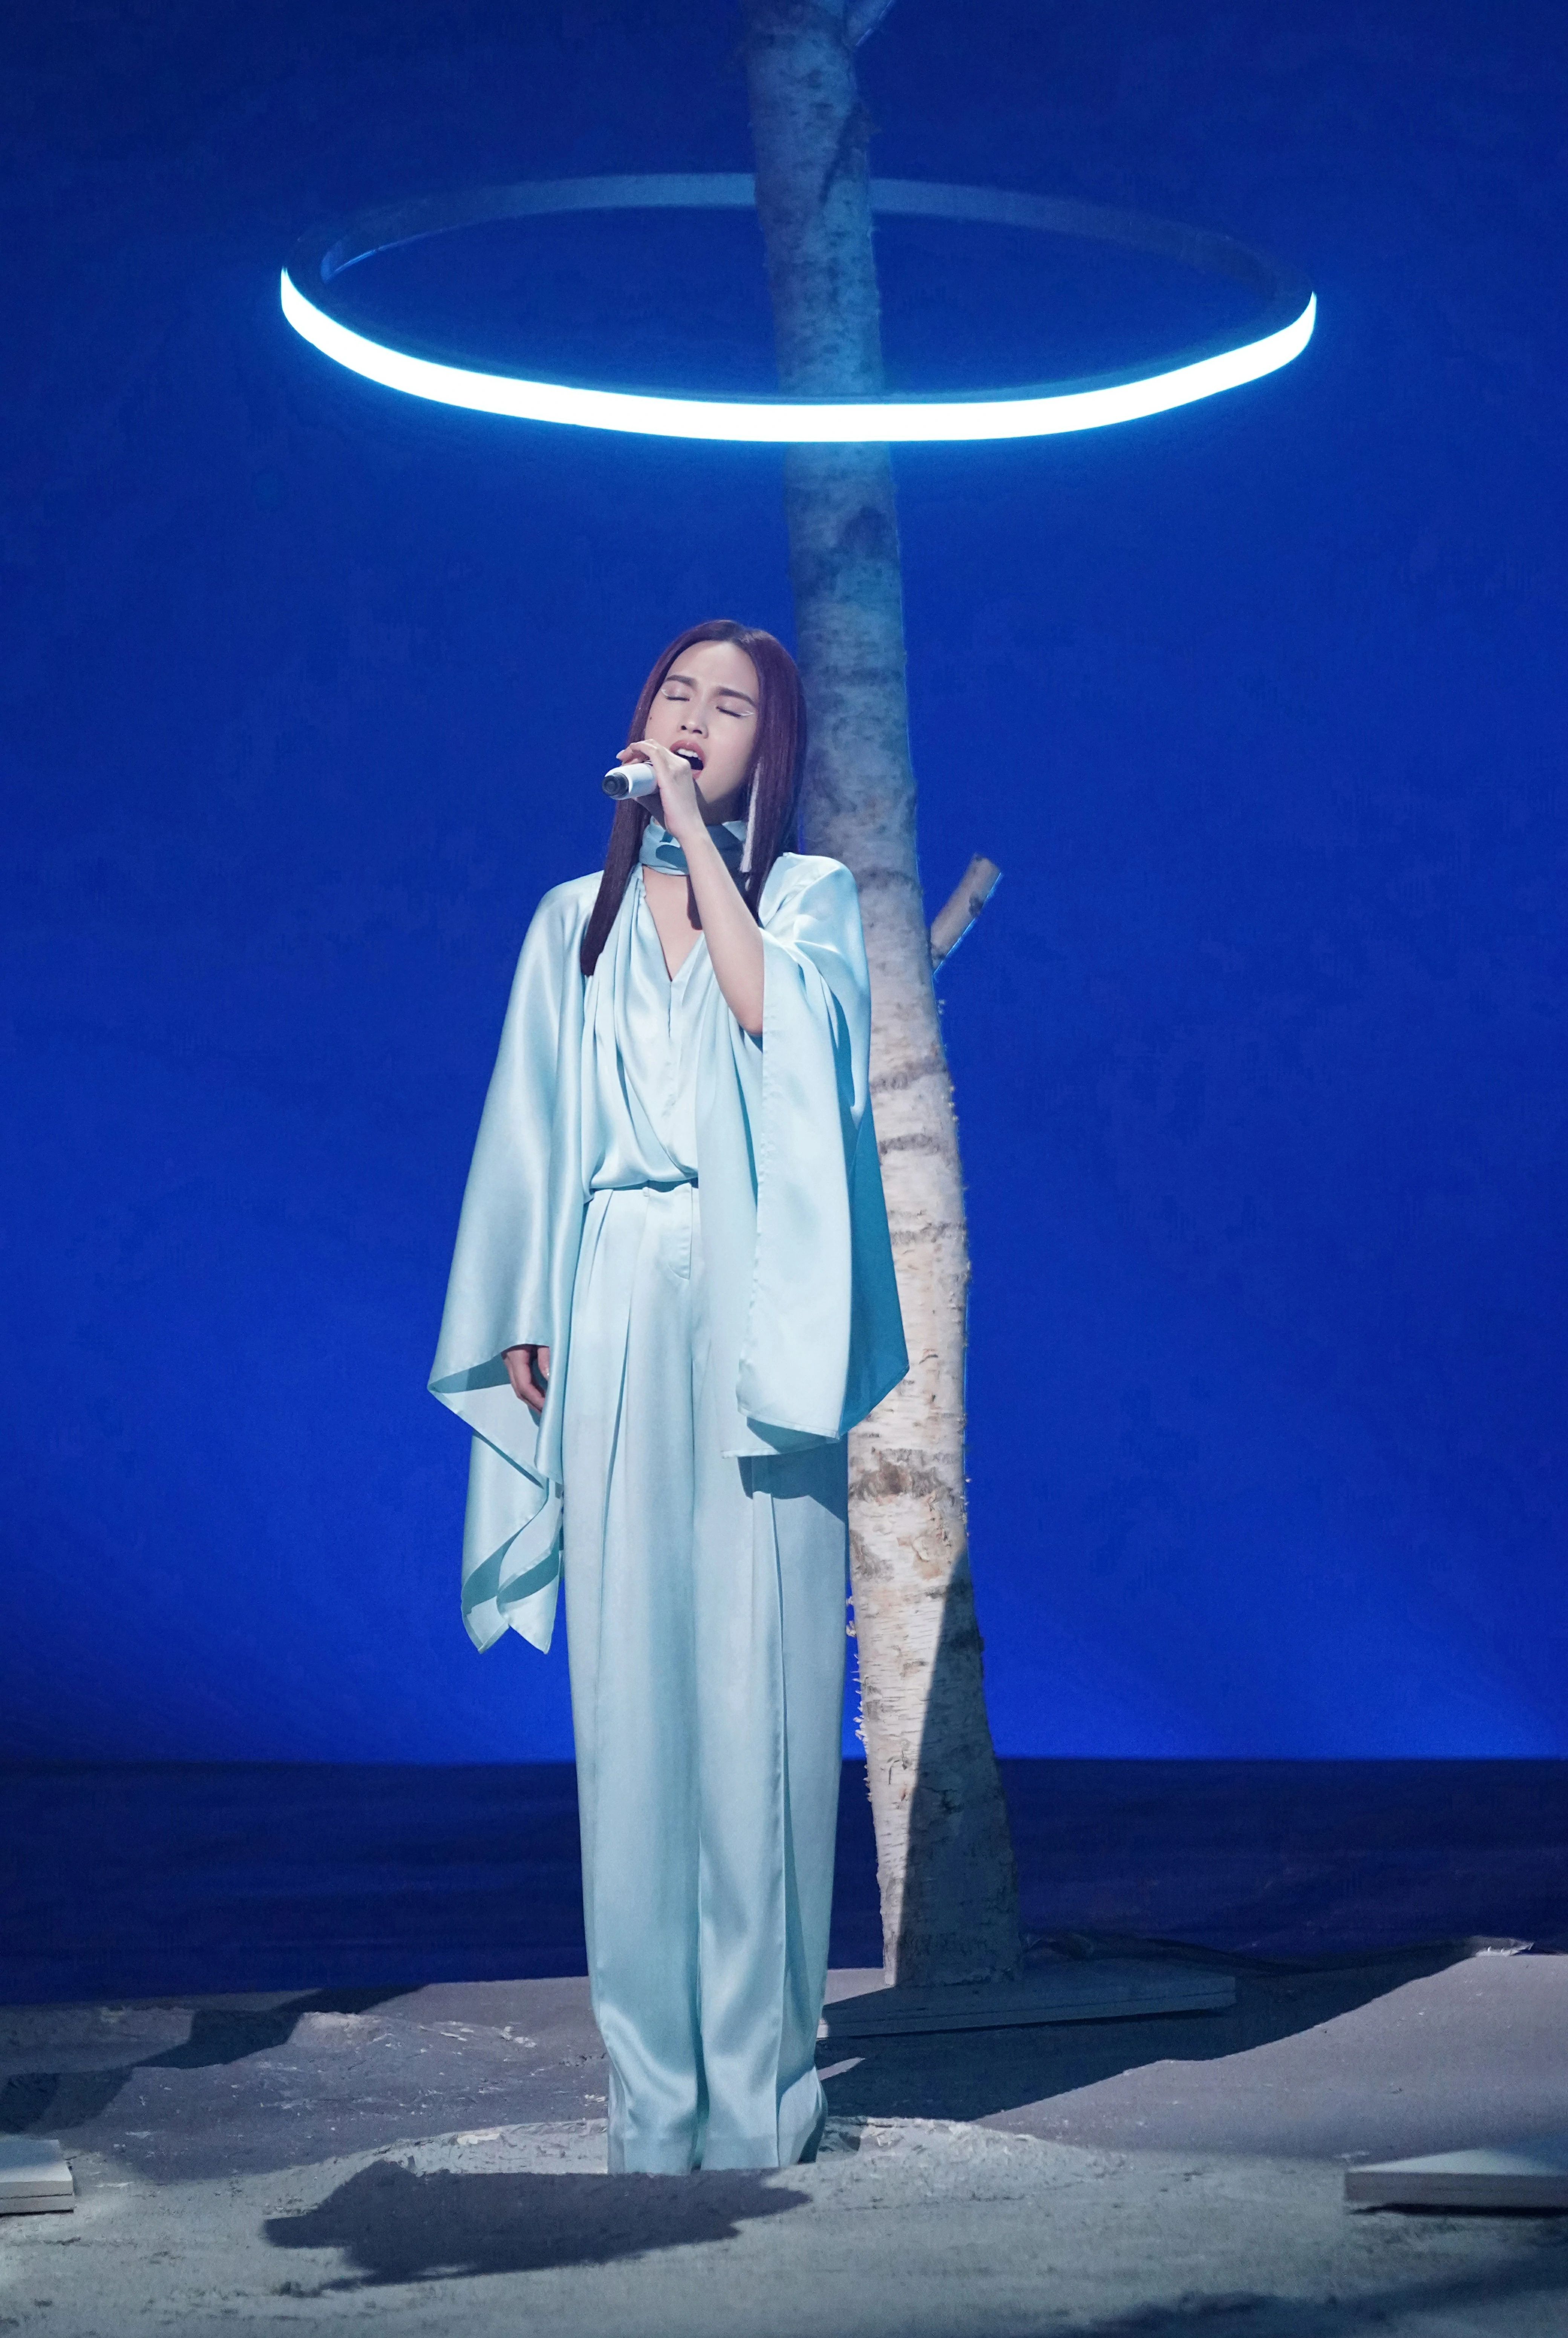 杨丞琳亮相本周《闪光的乐队》 挑染公主切造型带来《天堂》舞台,25